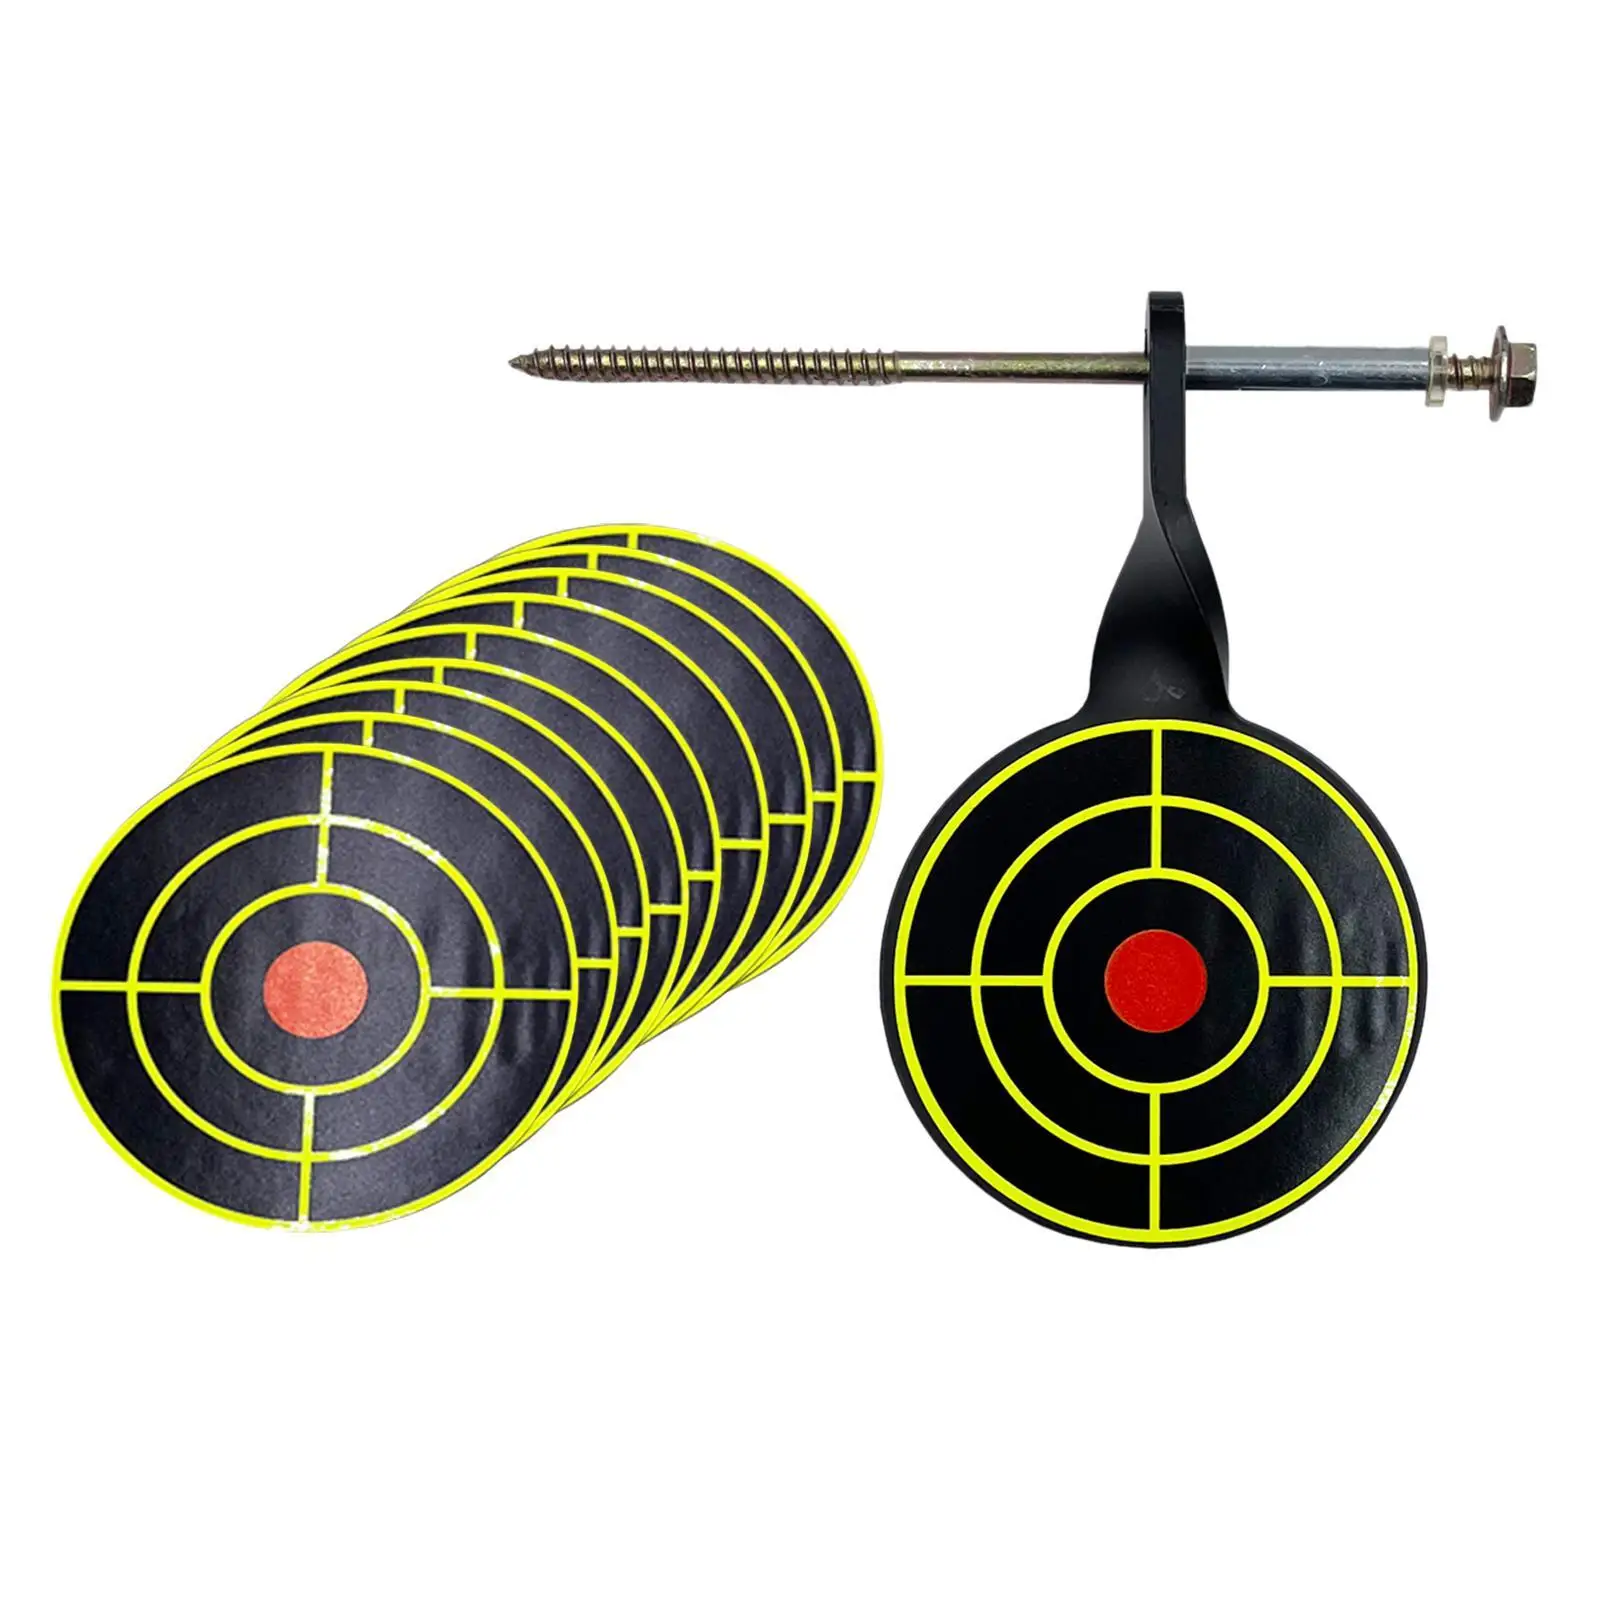 

Metal Practice Target 5mm Tree Standing Target Rotary Screwed Type for Range